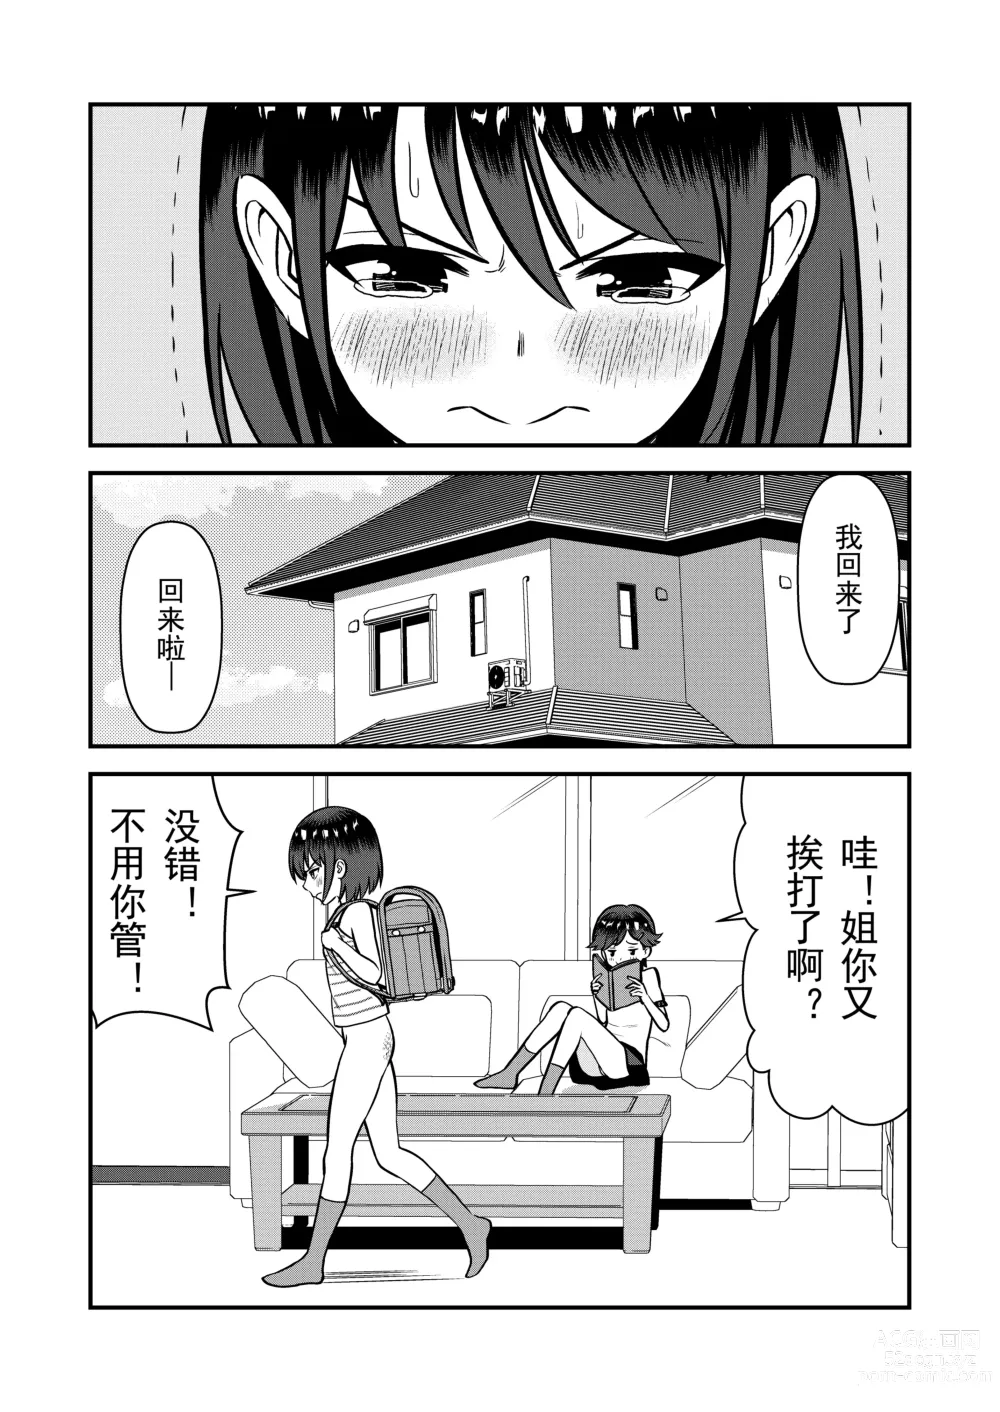 Page 24 of doujinshi 被惩罚后的当天,下半身禁止穿衣服的学校